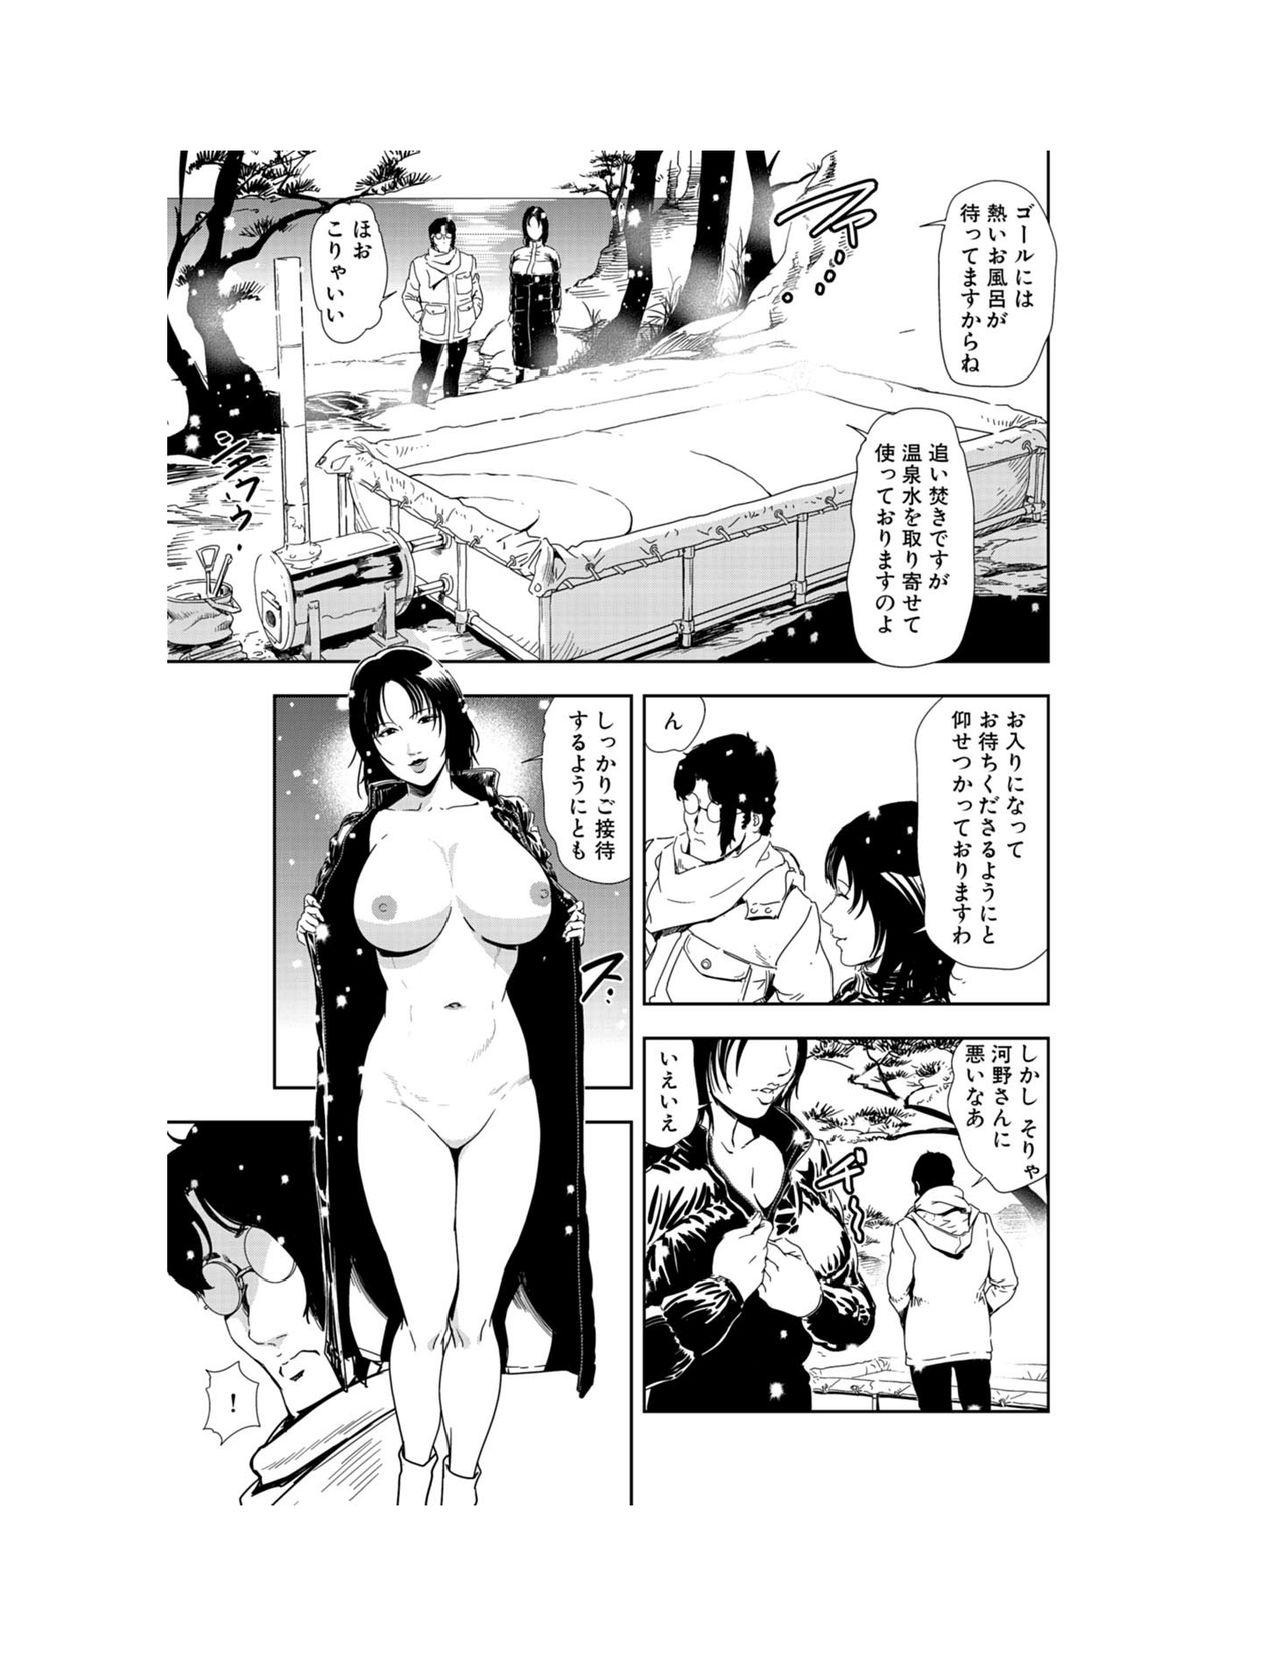 Nikuhisyo Yukiko 22 86